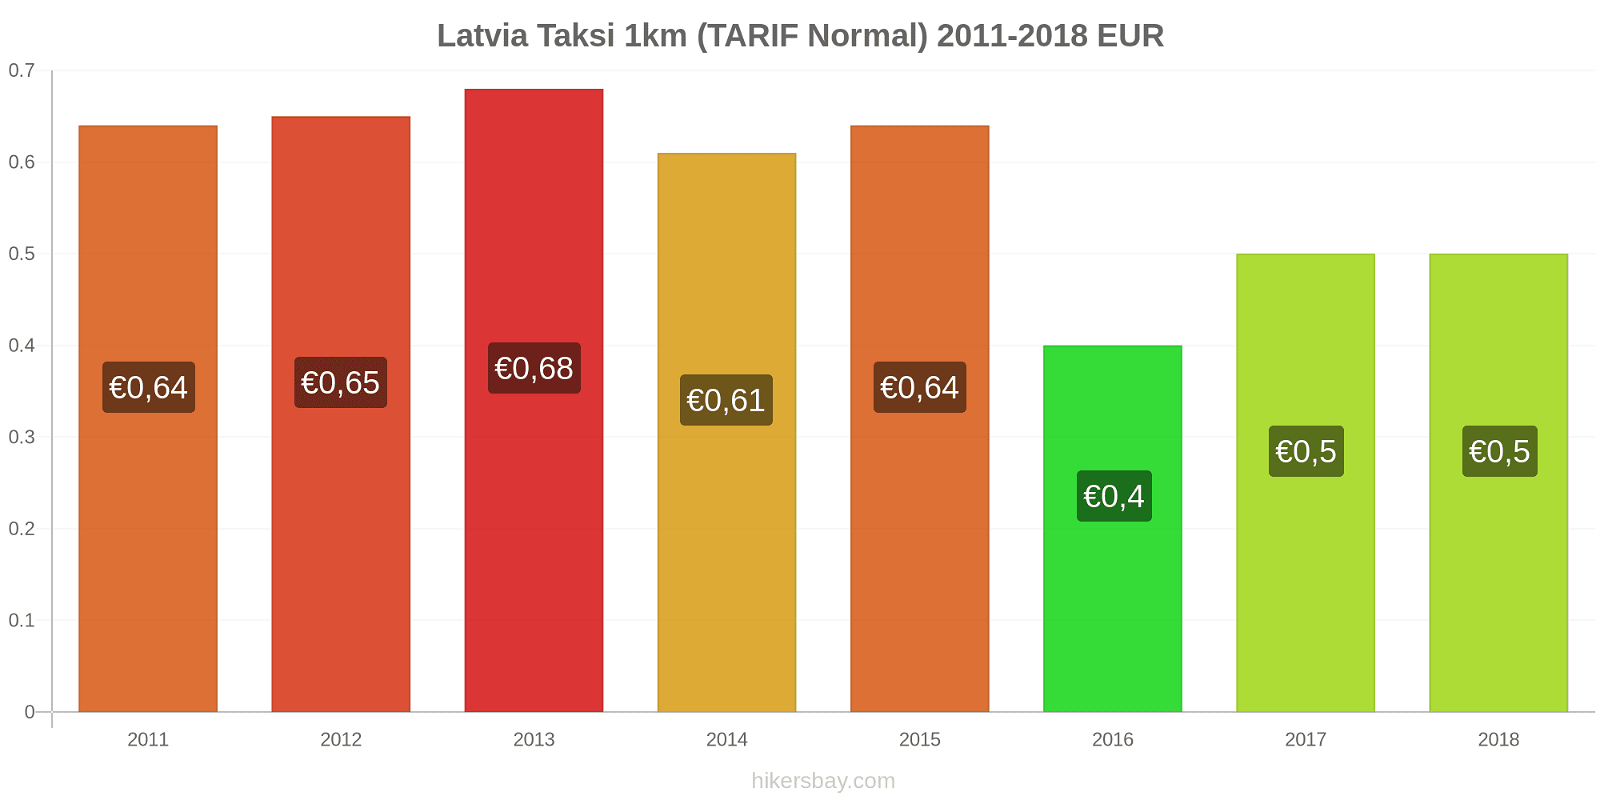 Latvia perubahan harga Taksi 1km (Tarif Normal) hikersbay.com